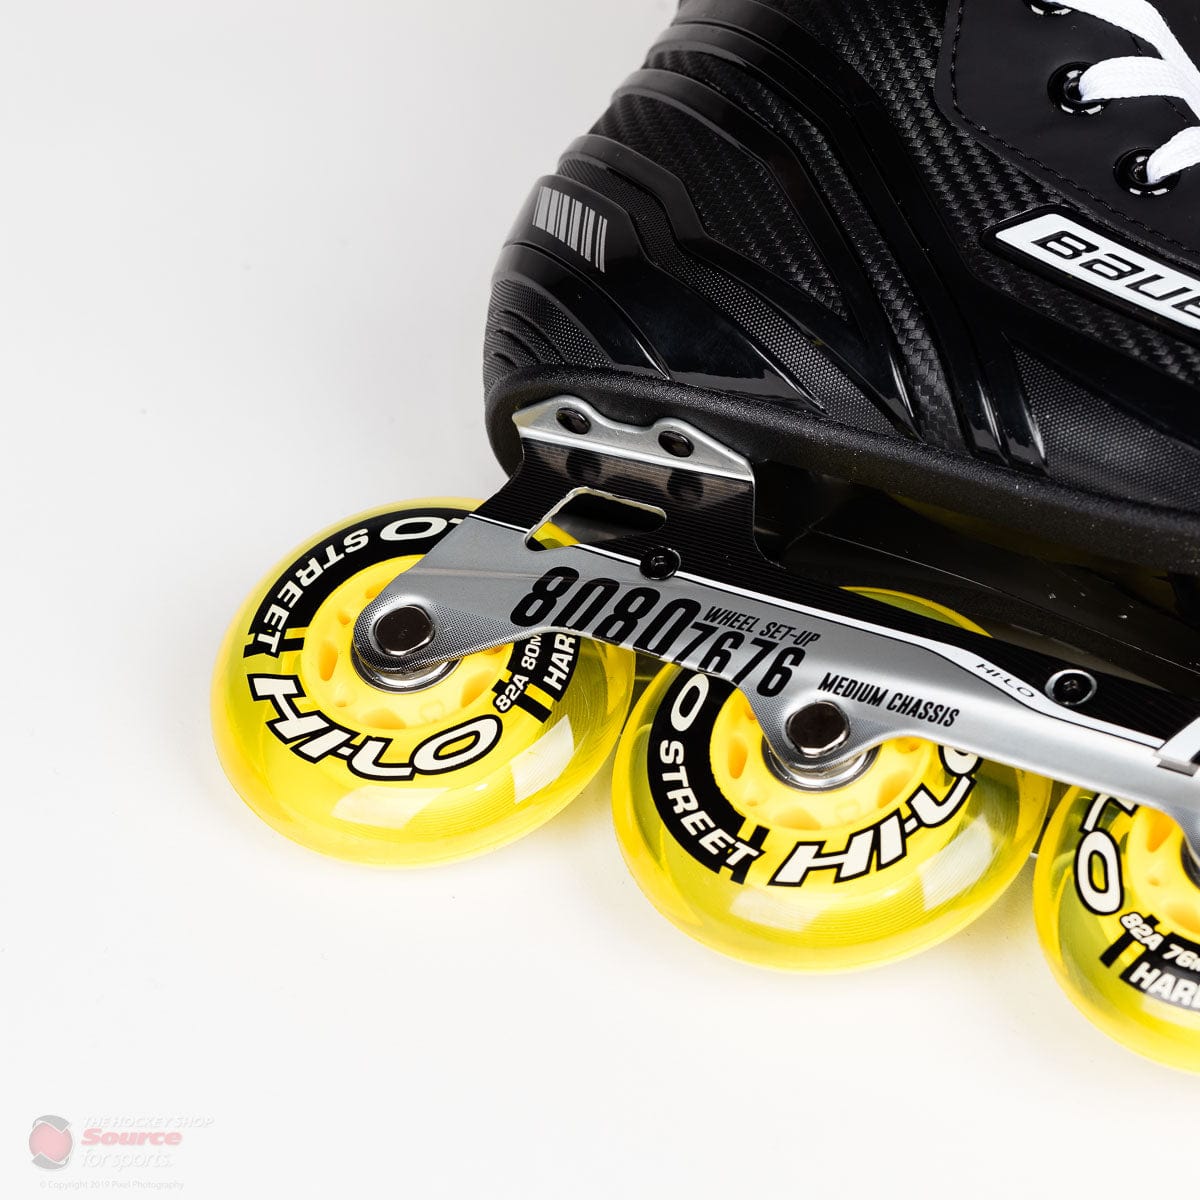 Bauer RS Junior Roller Hockey Skates